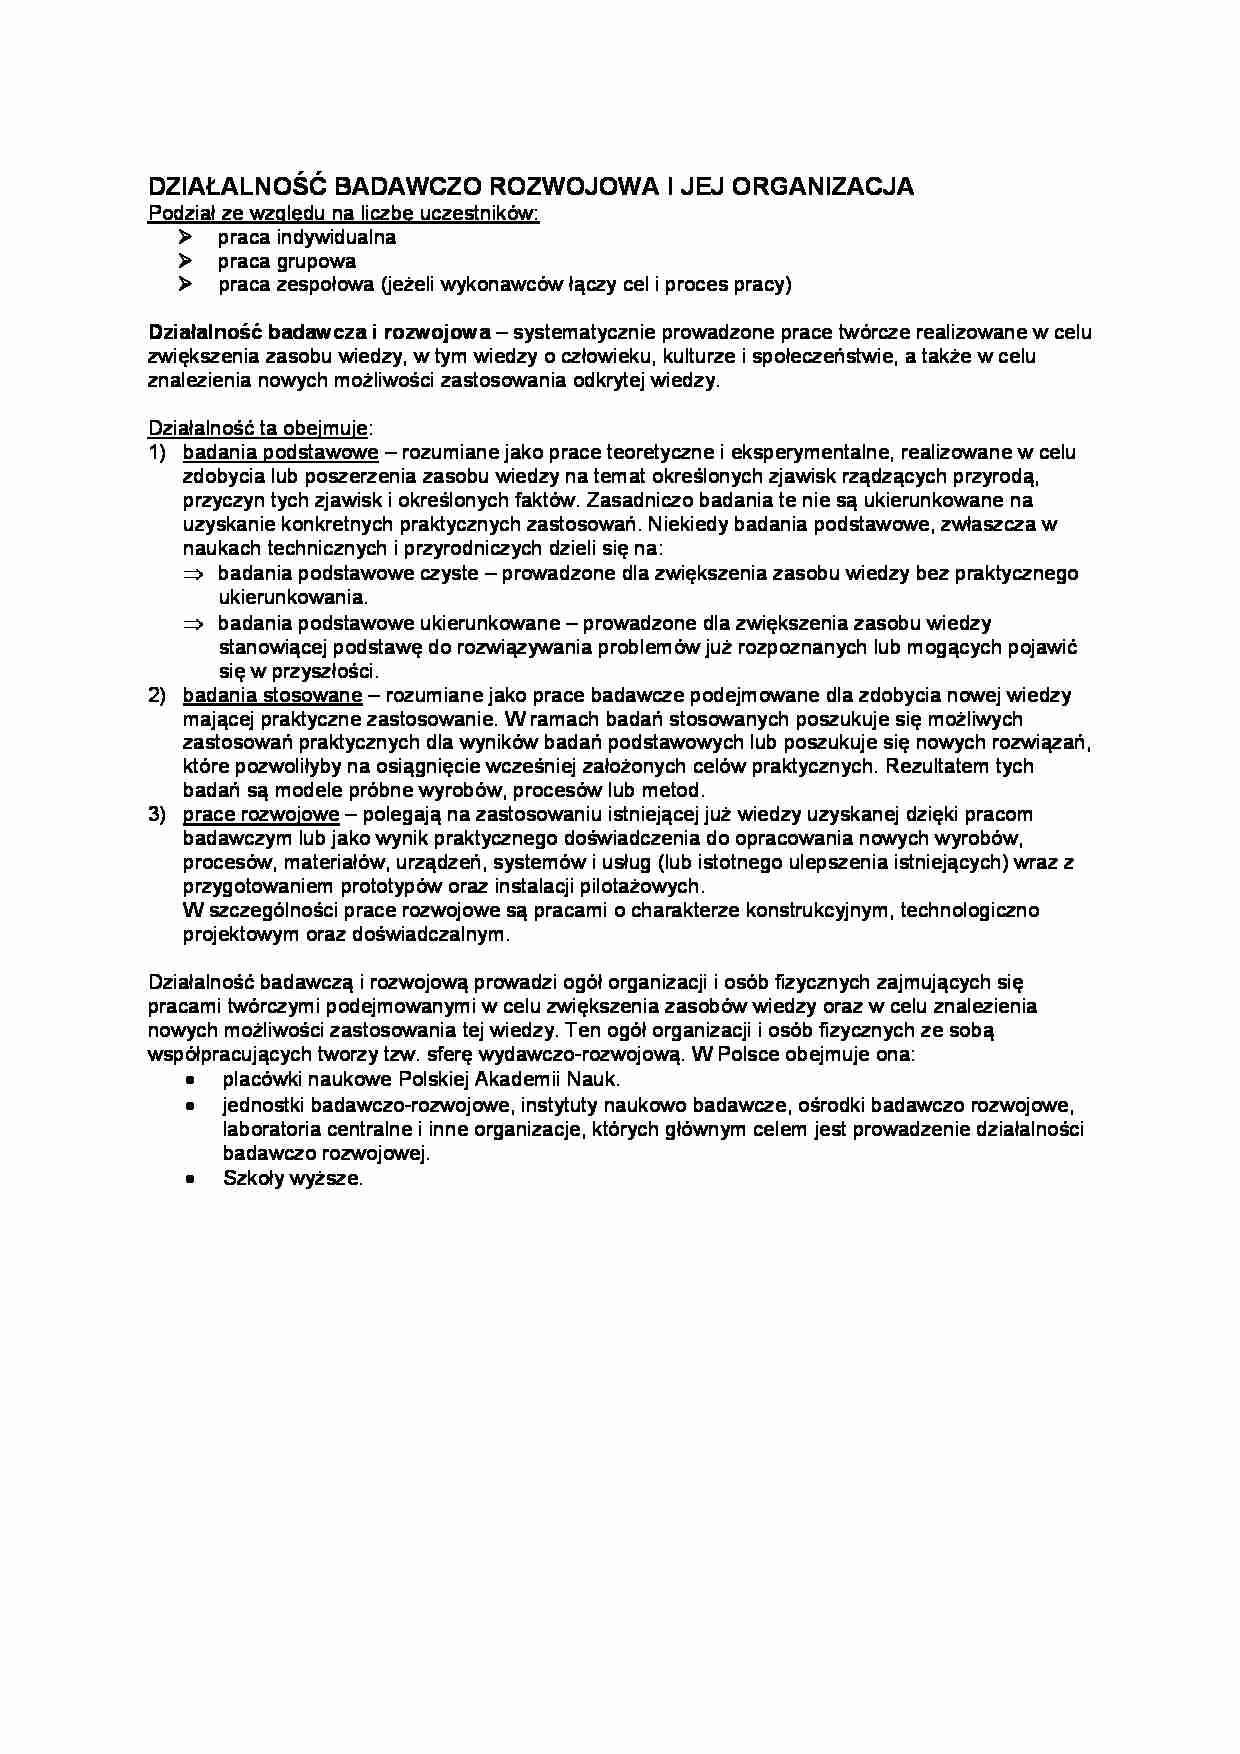 Działalność badawczo-rozwojowa i jej organizacja-opracowanie - strona 1